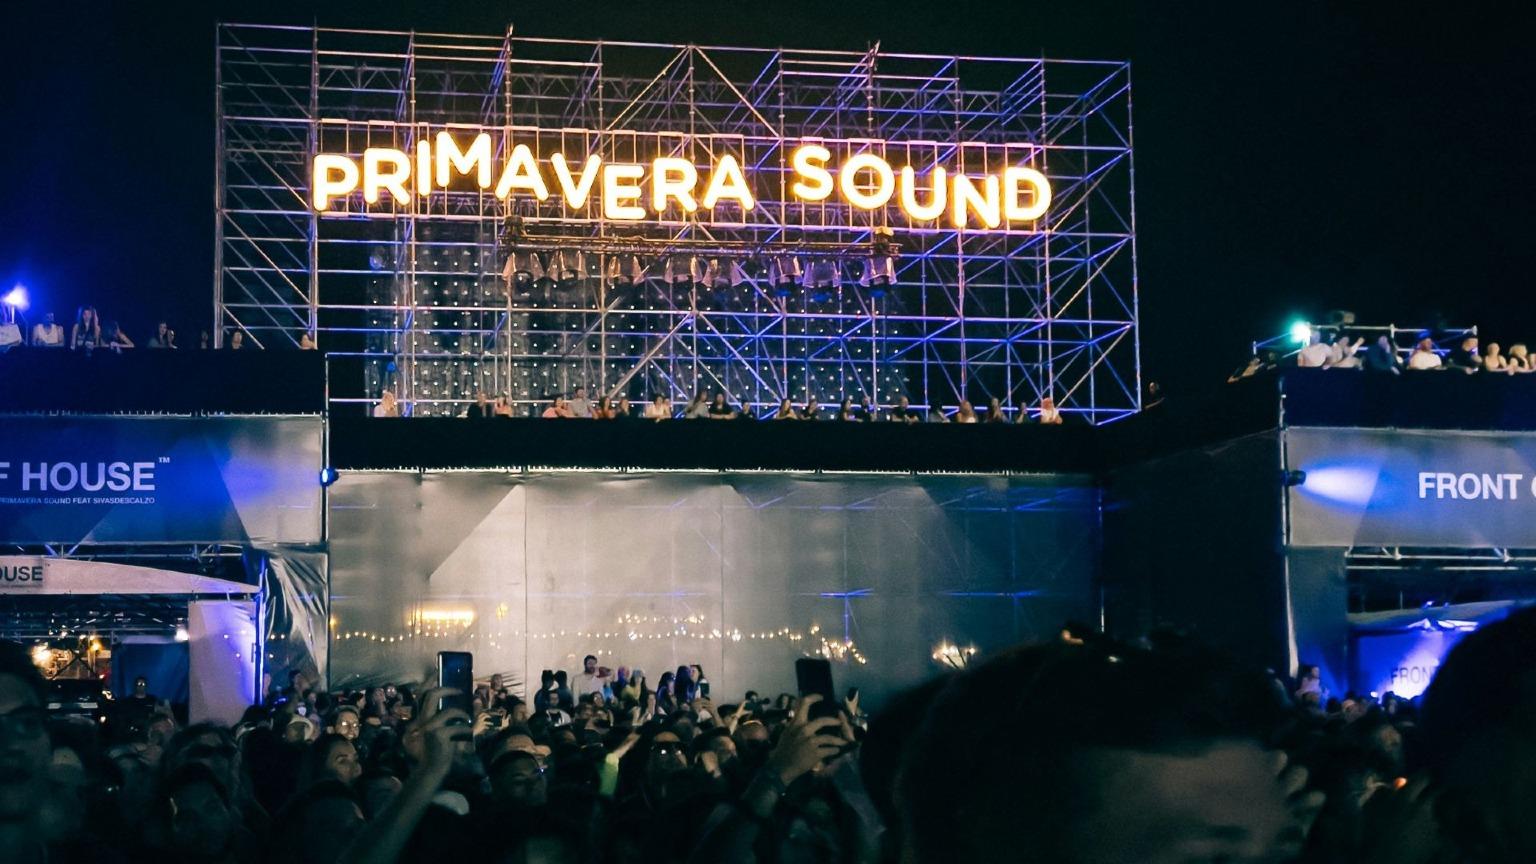 Una vibrante escena del escenario del Primavera Sound en Oporto, iluminado con luces de colores mientras una gran multitud de entusiastas asistentes al festival disfruta de la actuación en directo por la noche.